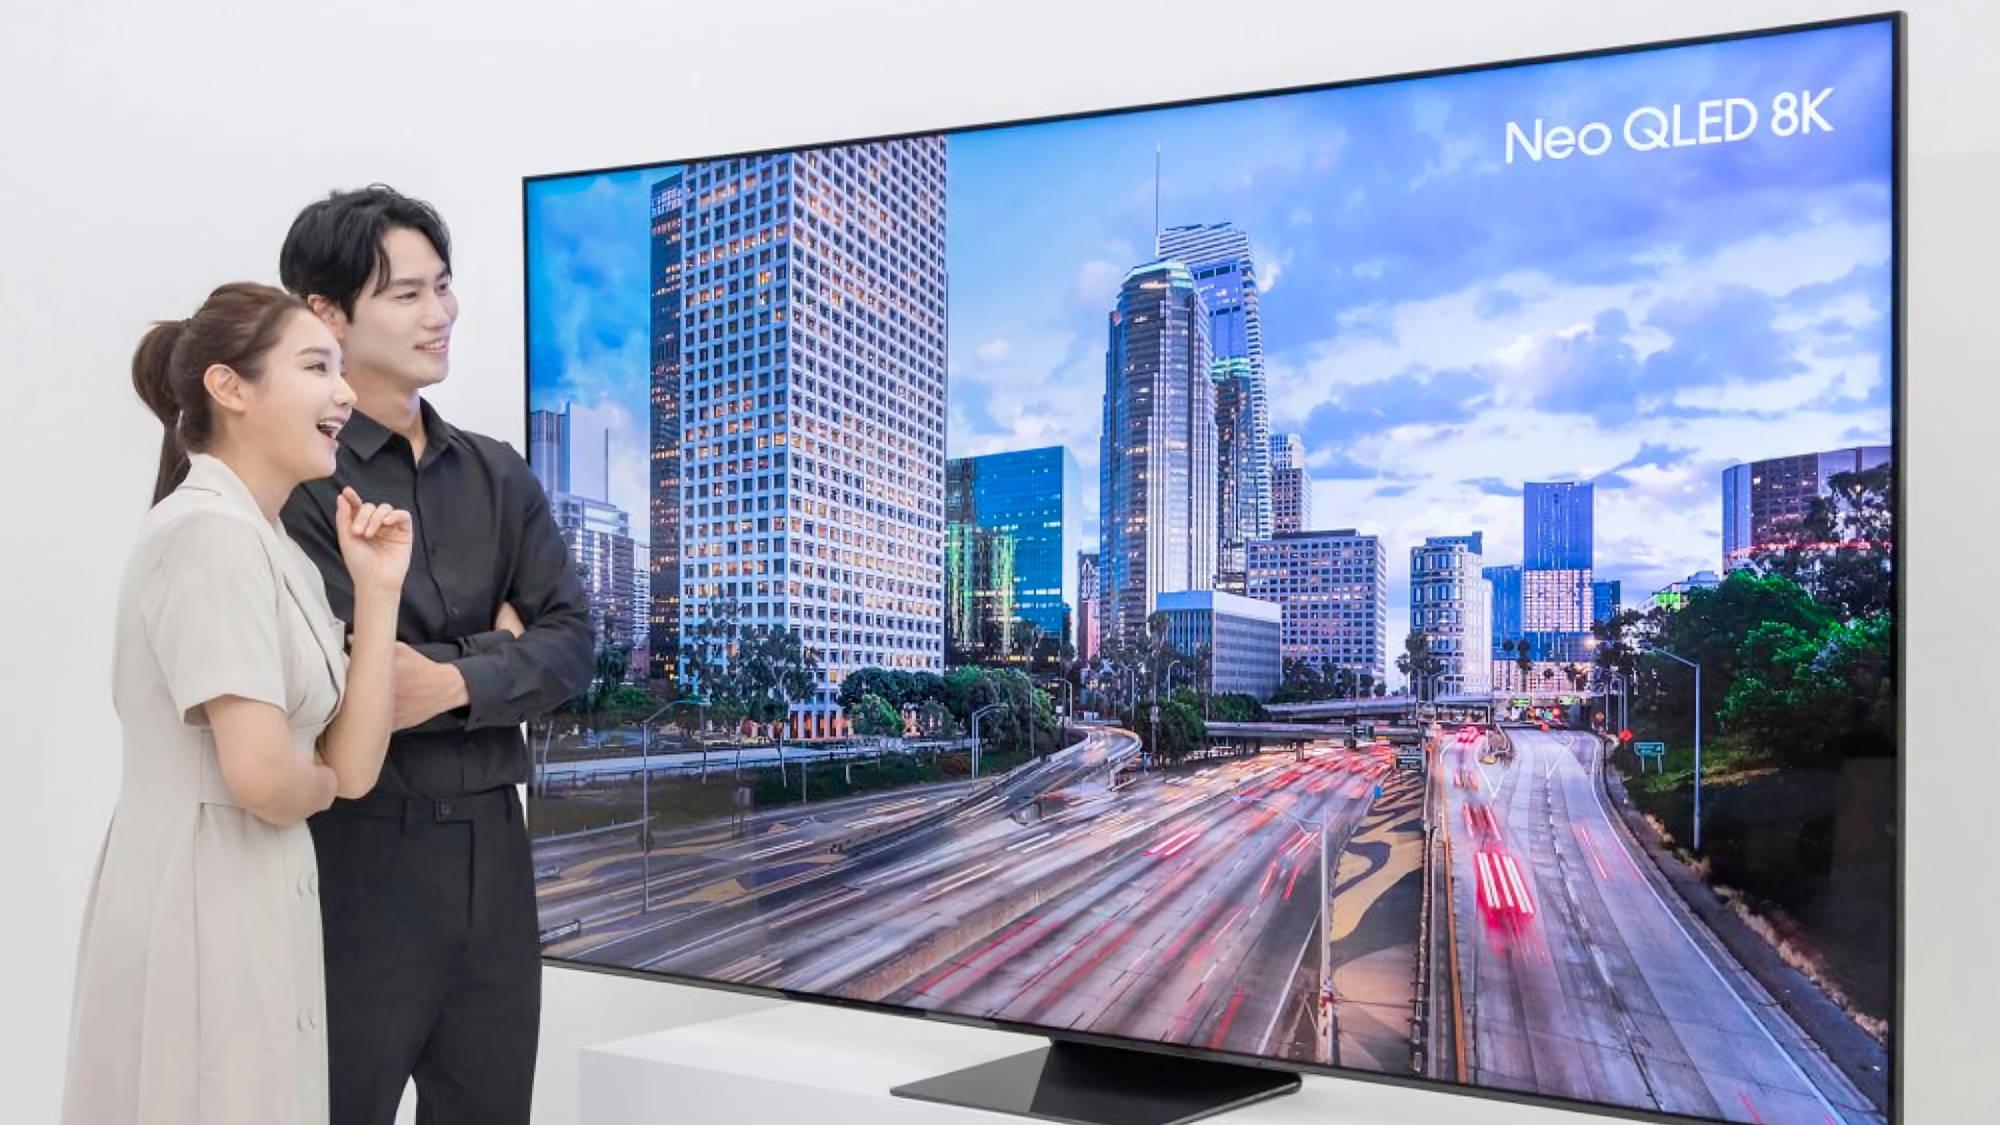 Samsung har presenterat en 98-tums 8K Neo QLED TV med 120W högtalare för 39 000 USD